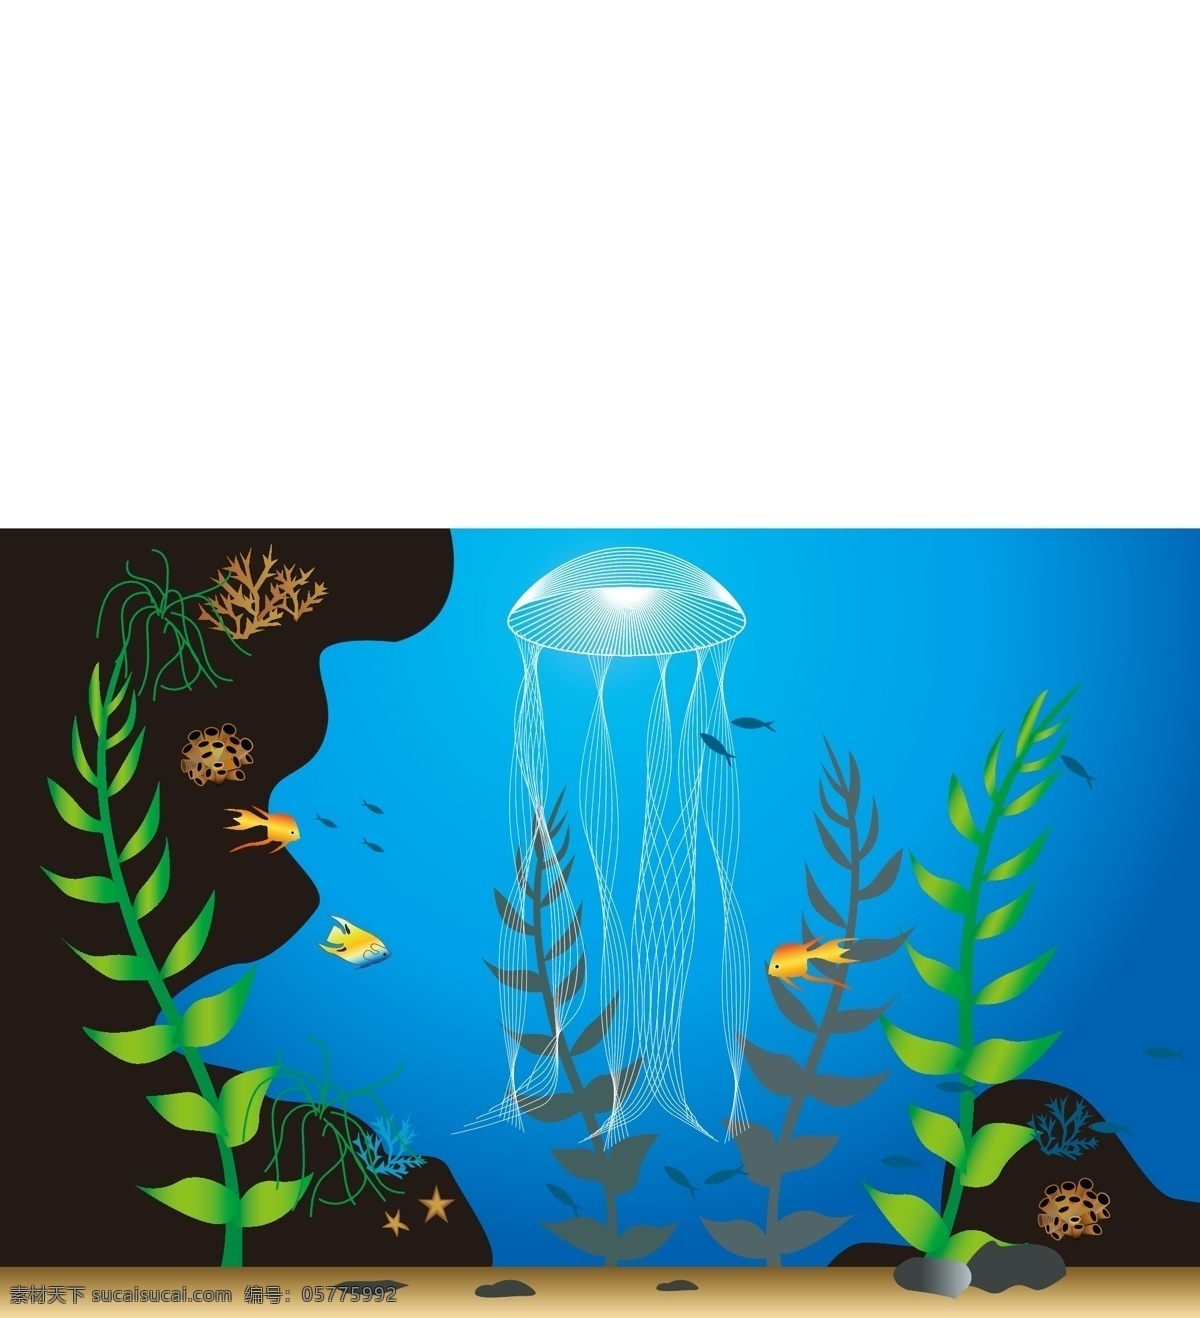 海底世界 水母 鱼 海草 珊瑚 卵石 沙滩 海星 生物世界 海洋生物 矢量图库